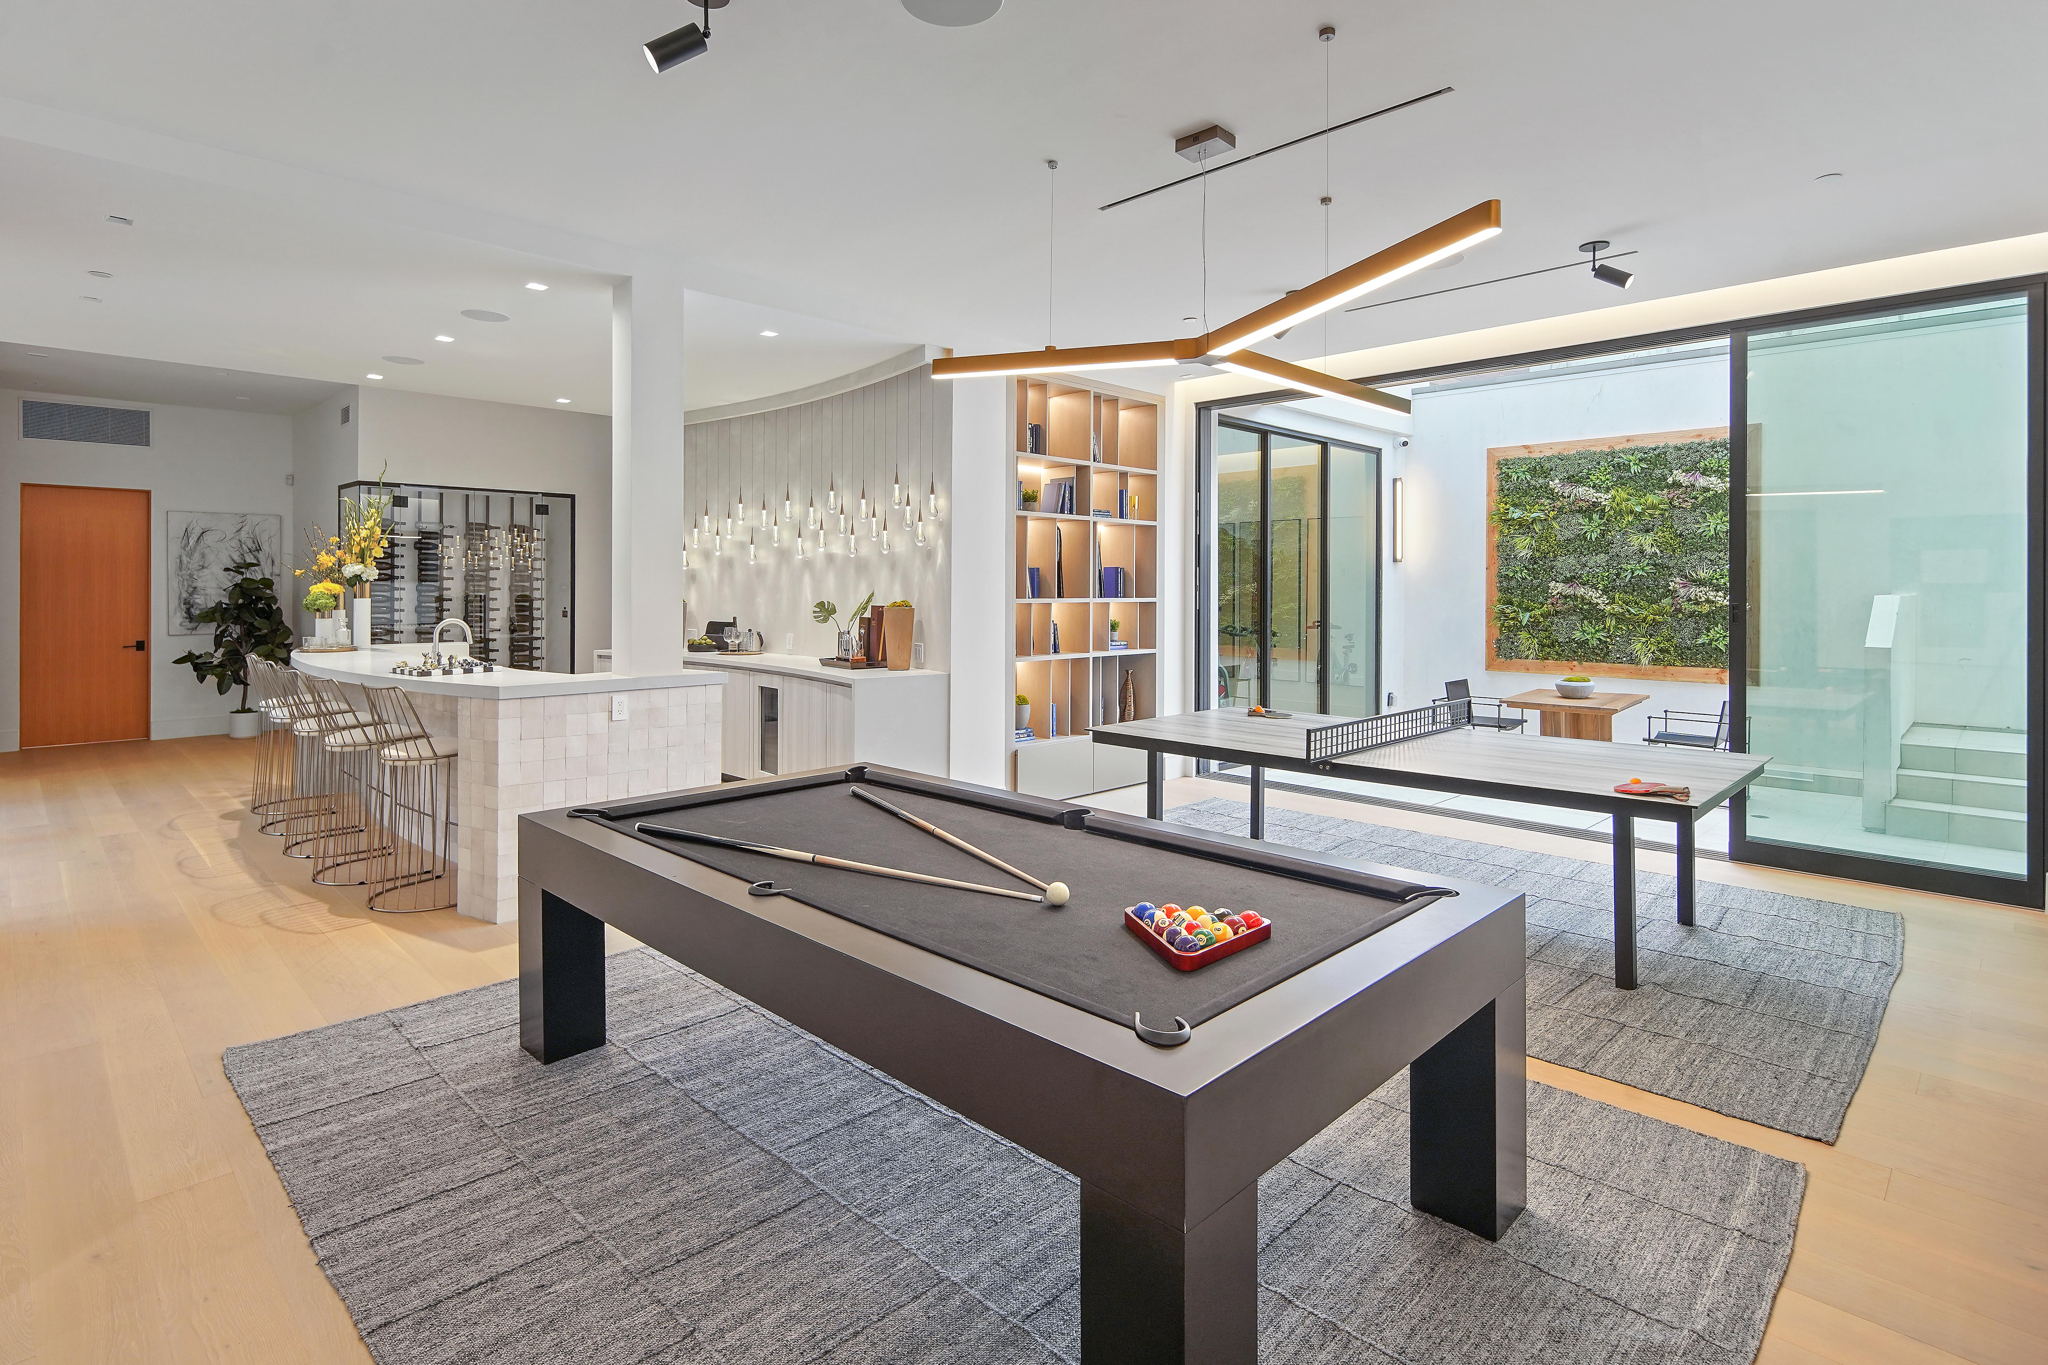 Game Room Luxury Interior Design